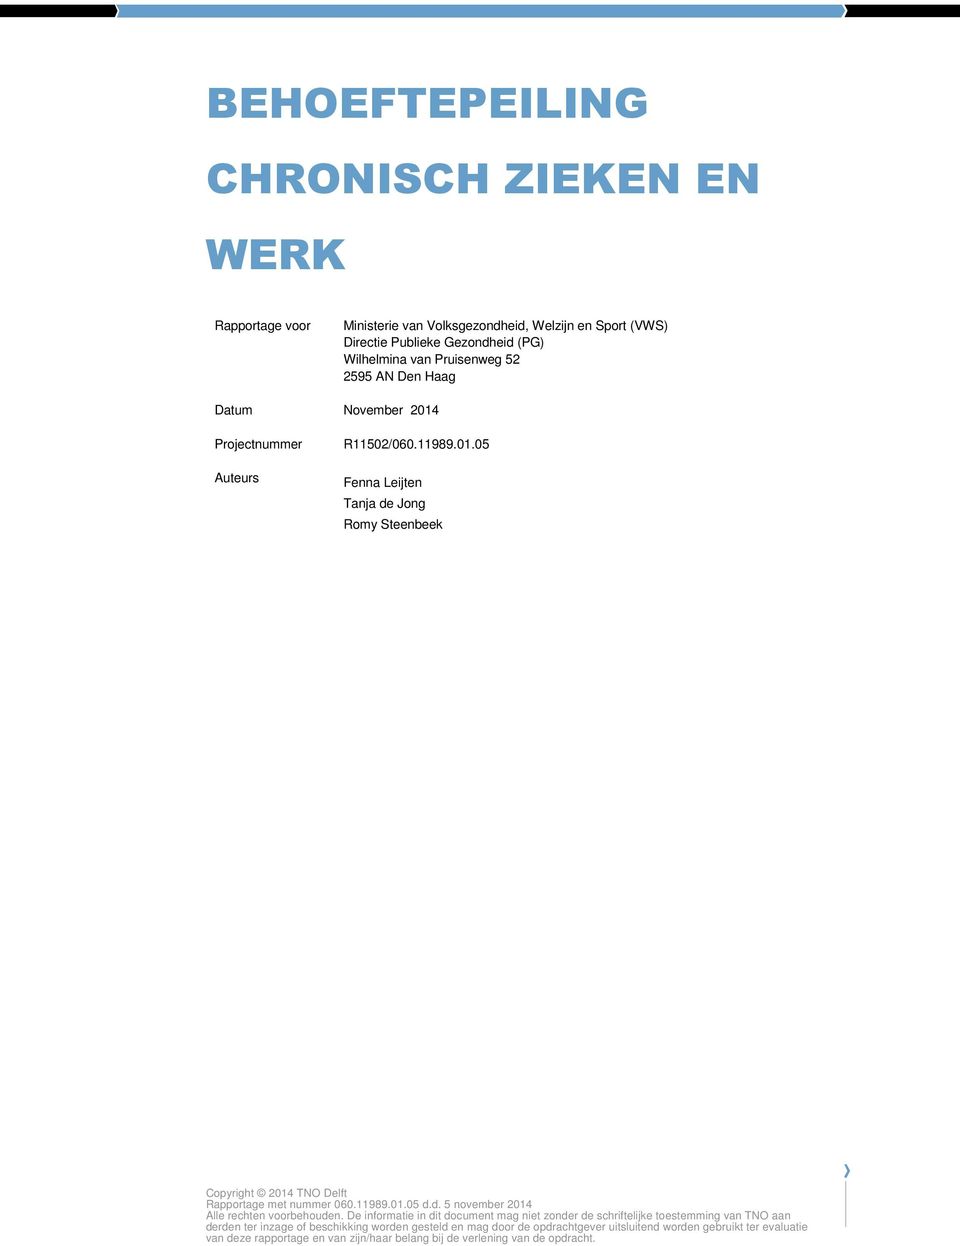 Projectnummer Auteurs R11502/060.11989.01.05 Fenna Leijten Tanja de Jong Romy Steenbeek Copyright 2014 TNO Delft Alle rechten voorbehouden.